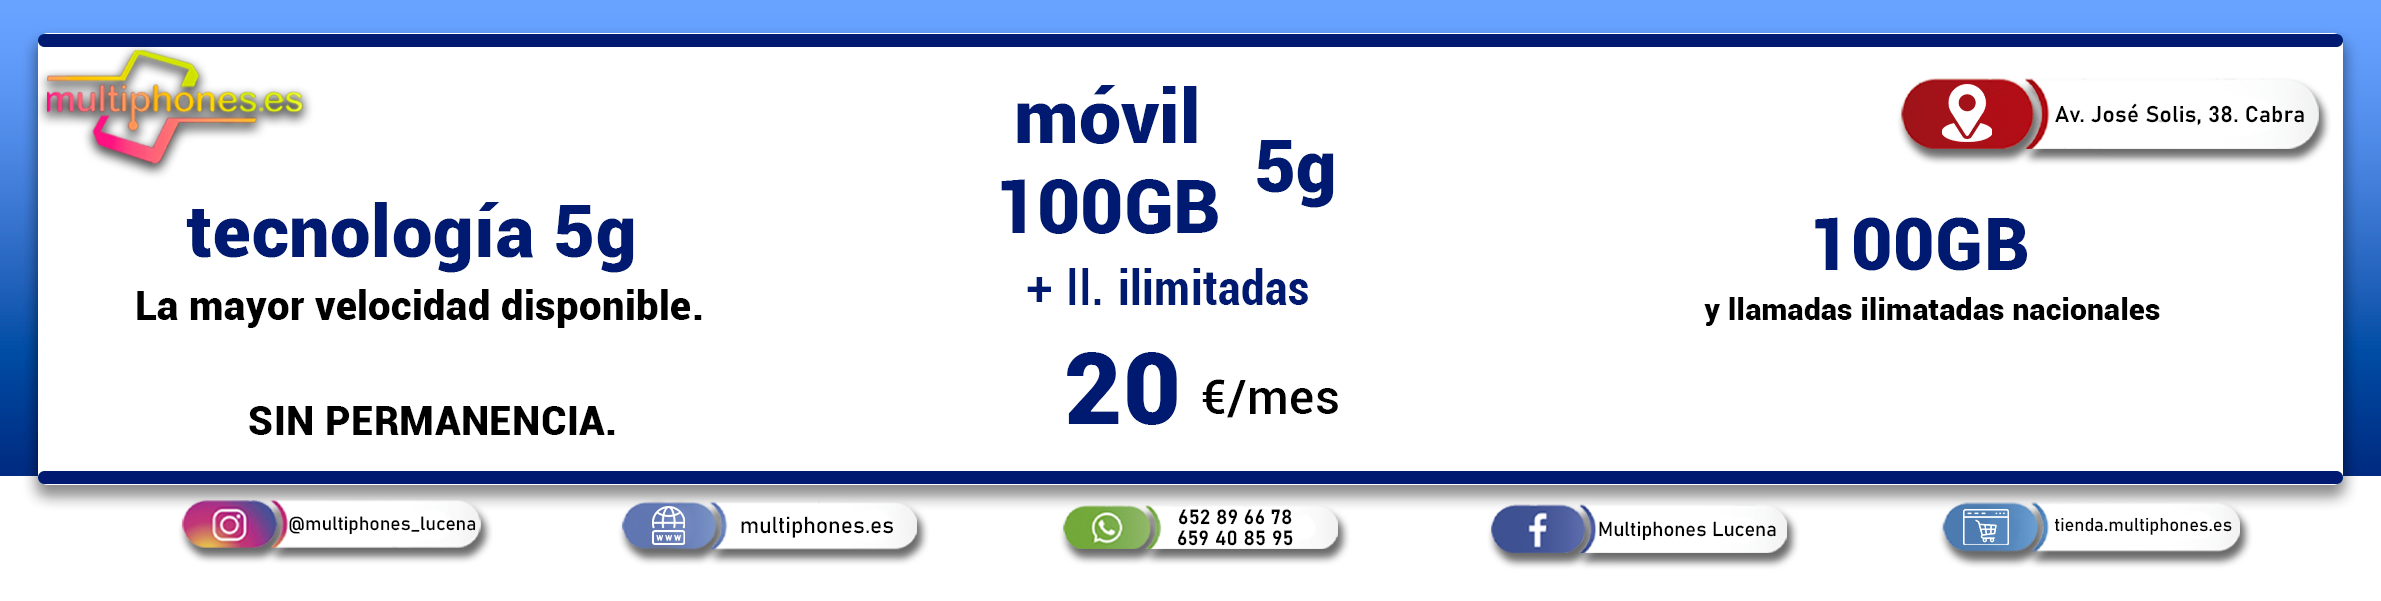 O2:  MOVIL 100GB + LLAMADAS ILIMITADAS